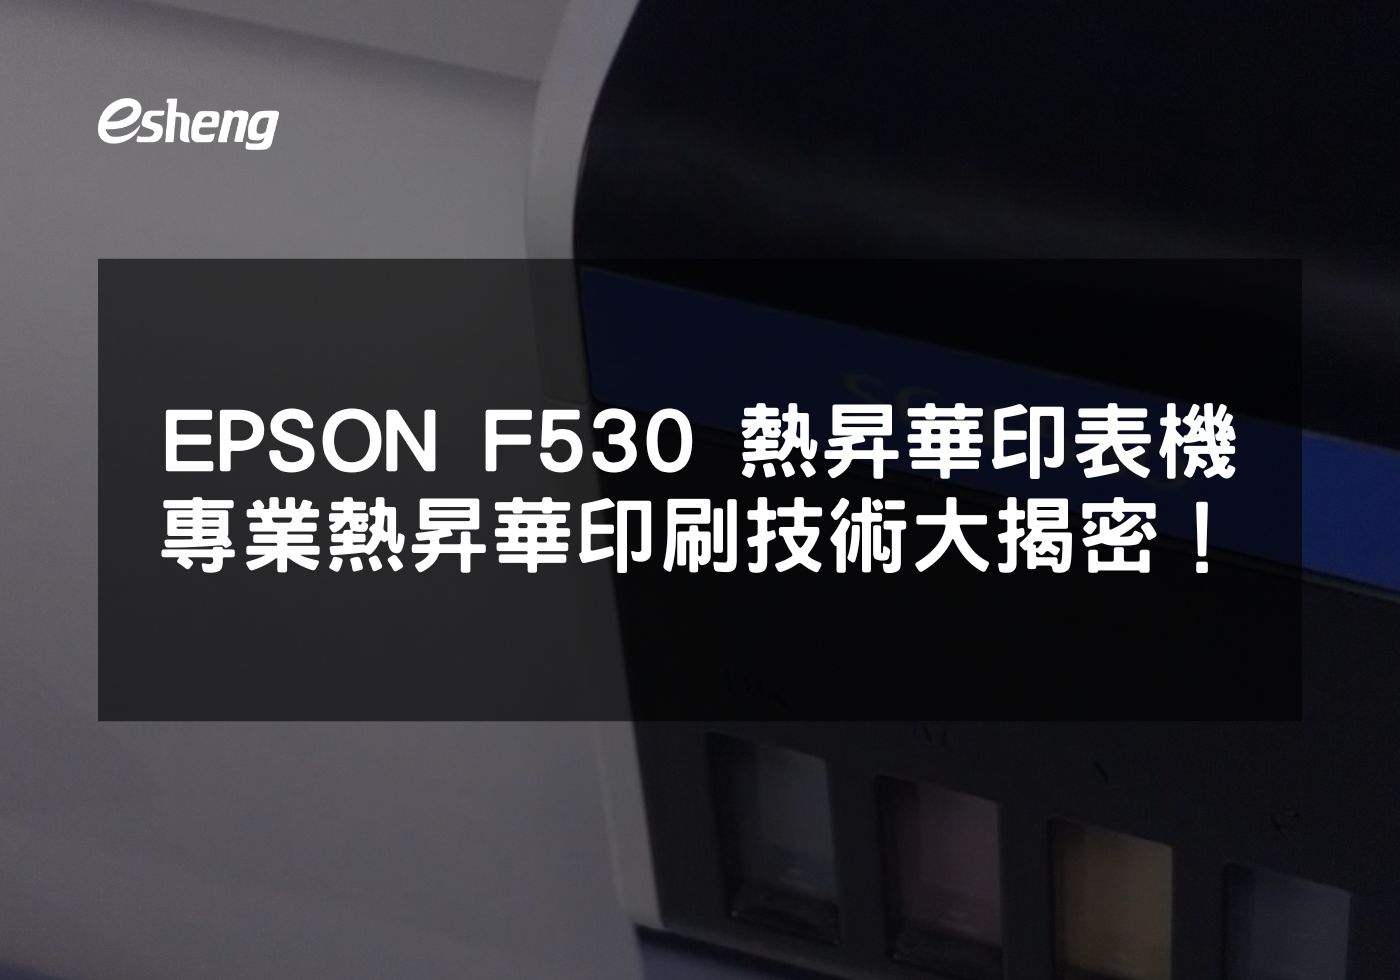 閱讀更多文章 EPSON F530 熱昇華印表機 專業熱昇華印刷技術大揭密！